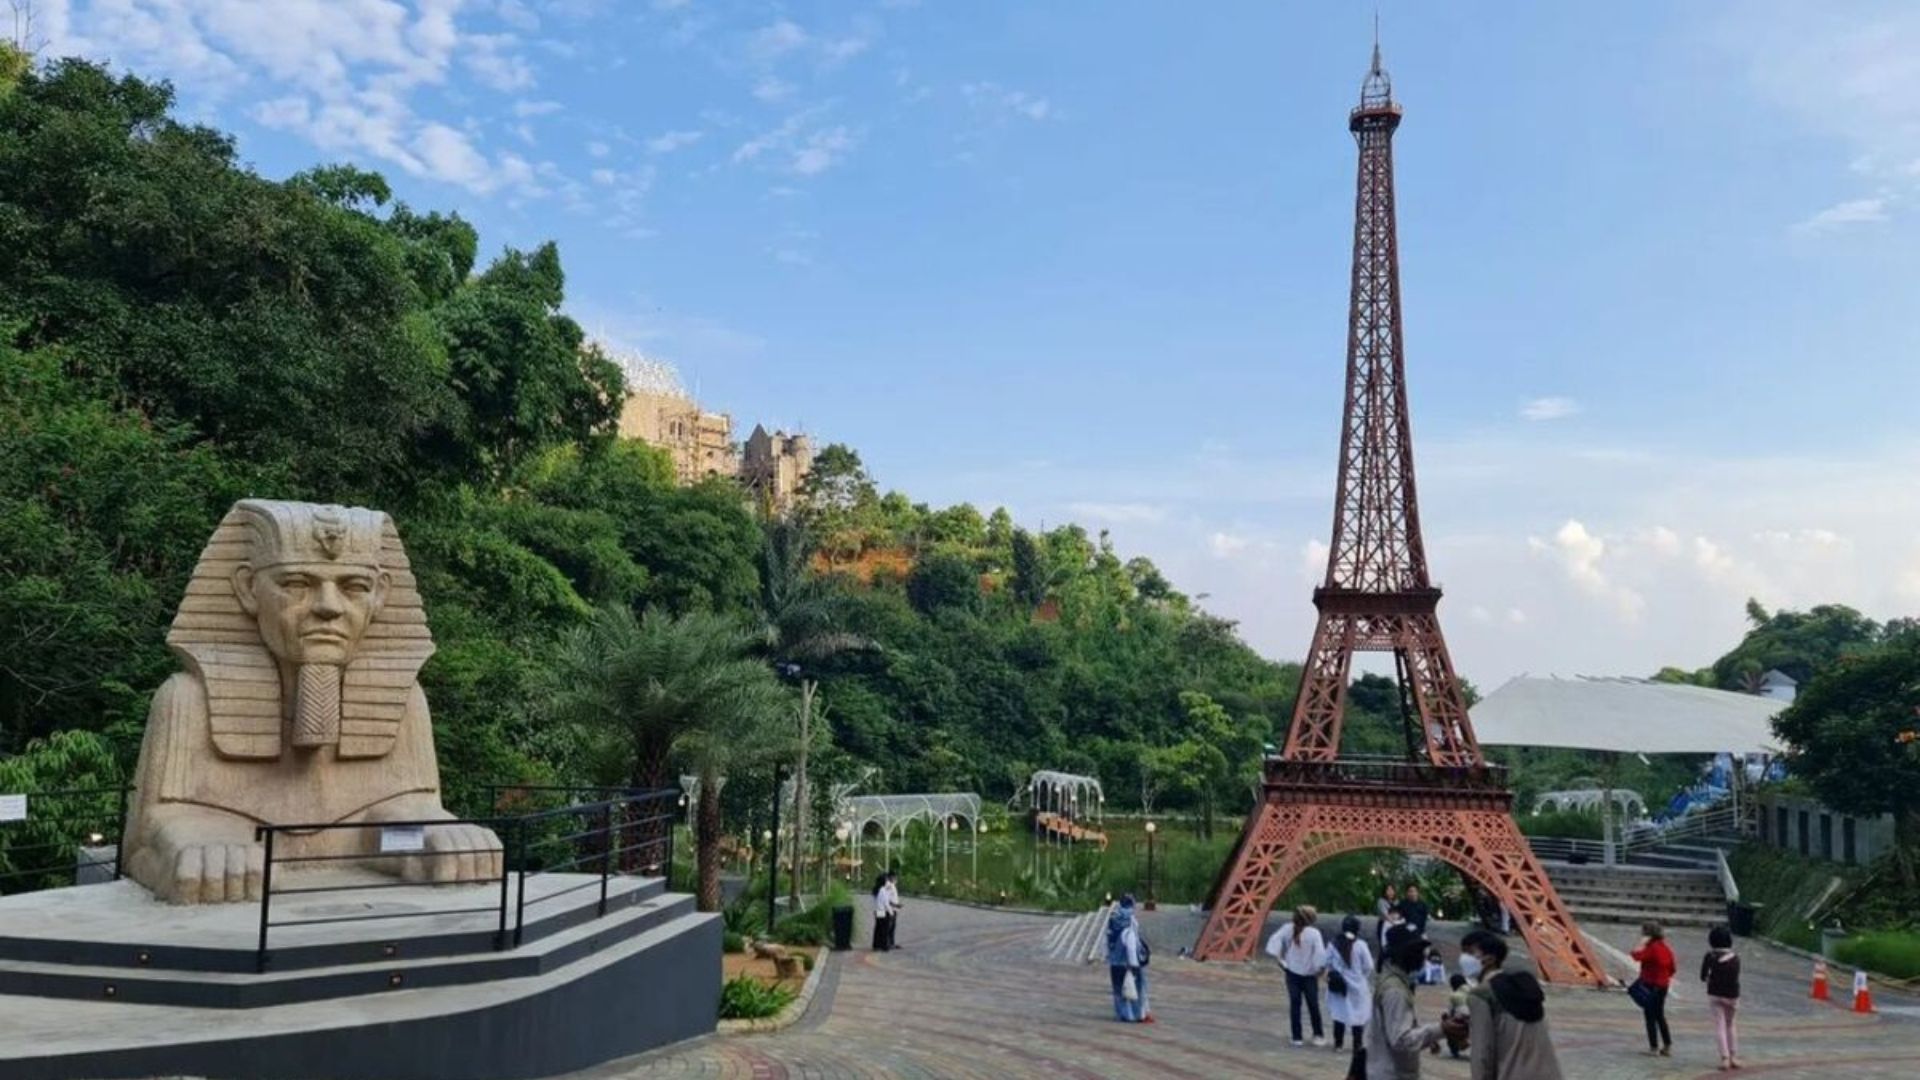 Sarae Hillis mempunyai area World Wonders yang merepresentasikan bangunan ikonik di dunia. Antara lain Sphynx dan Menara Eiffel. Keliling dunia dalam satu hari. /Instagram/dany_yoon